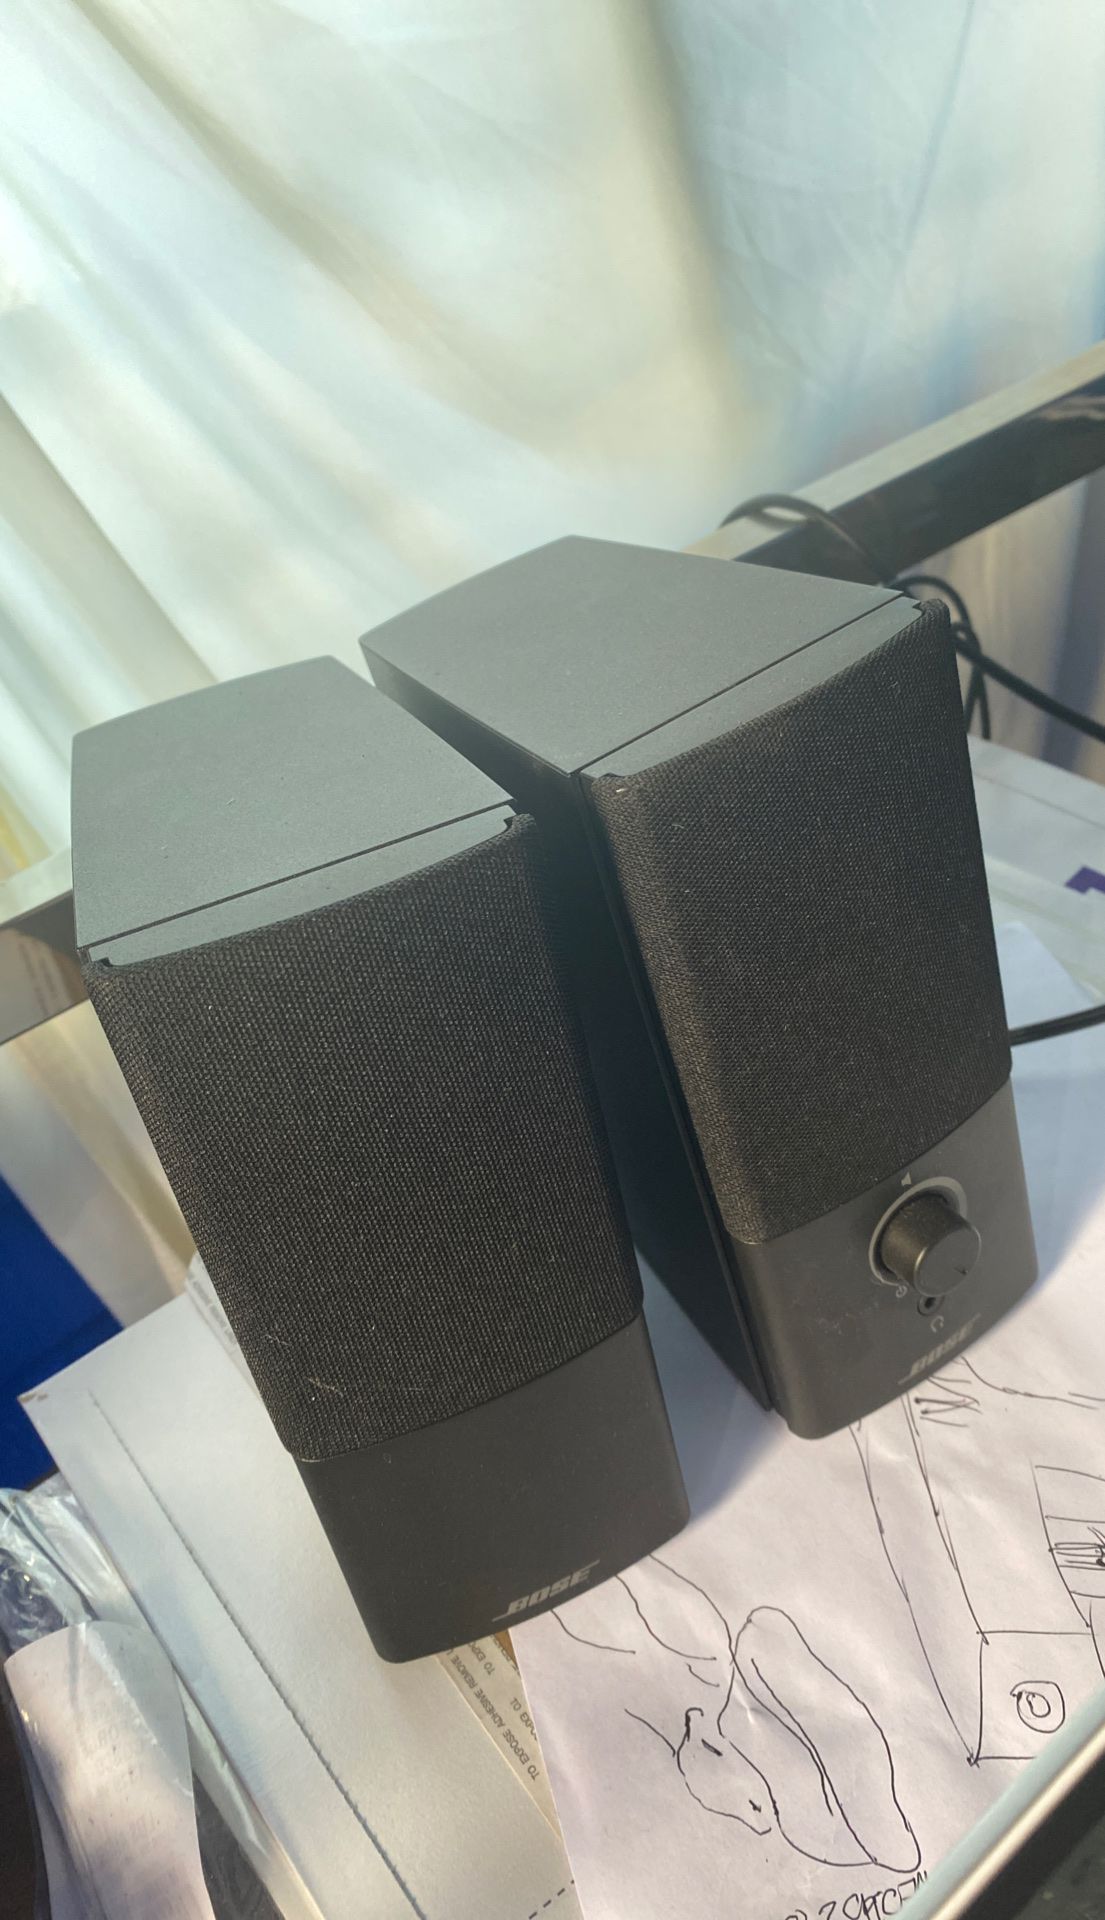 Bose speaker’s